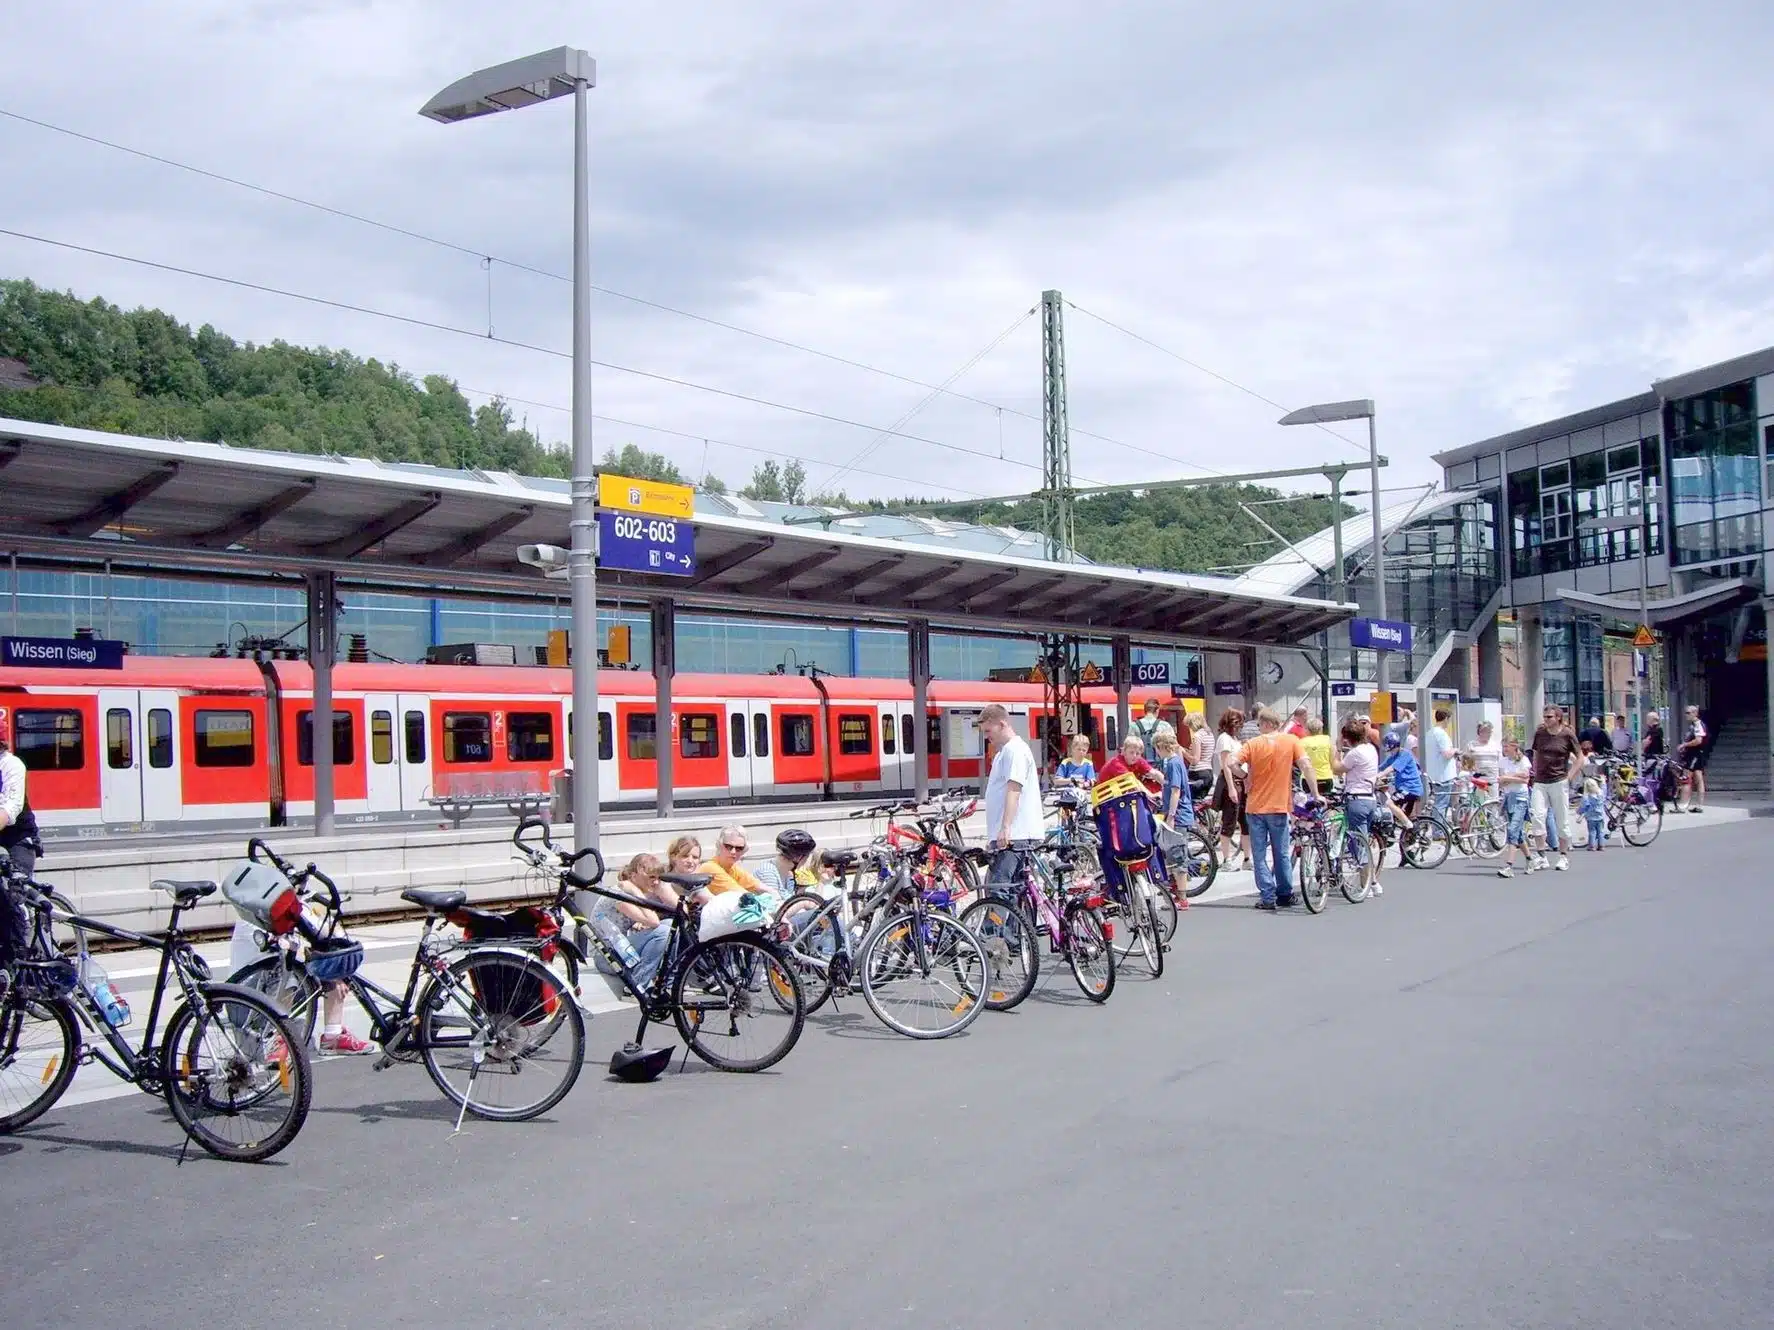 Sonderzug für Siegtal pur am Bahnhof in Wissen.